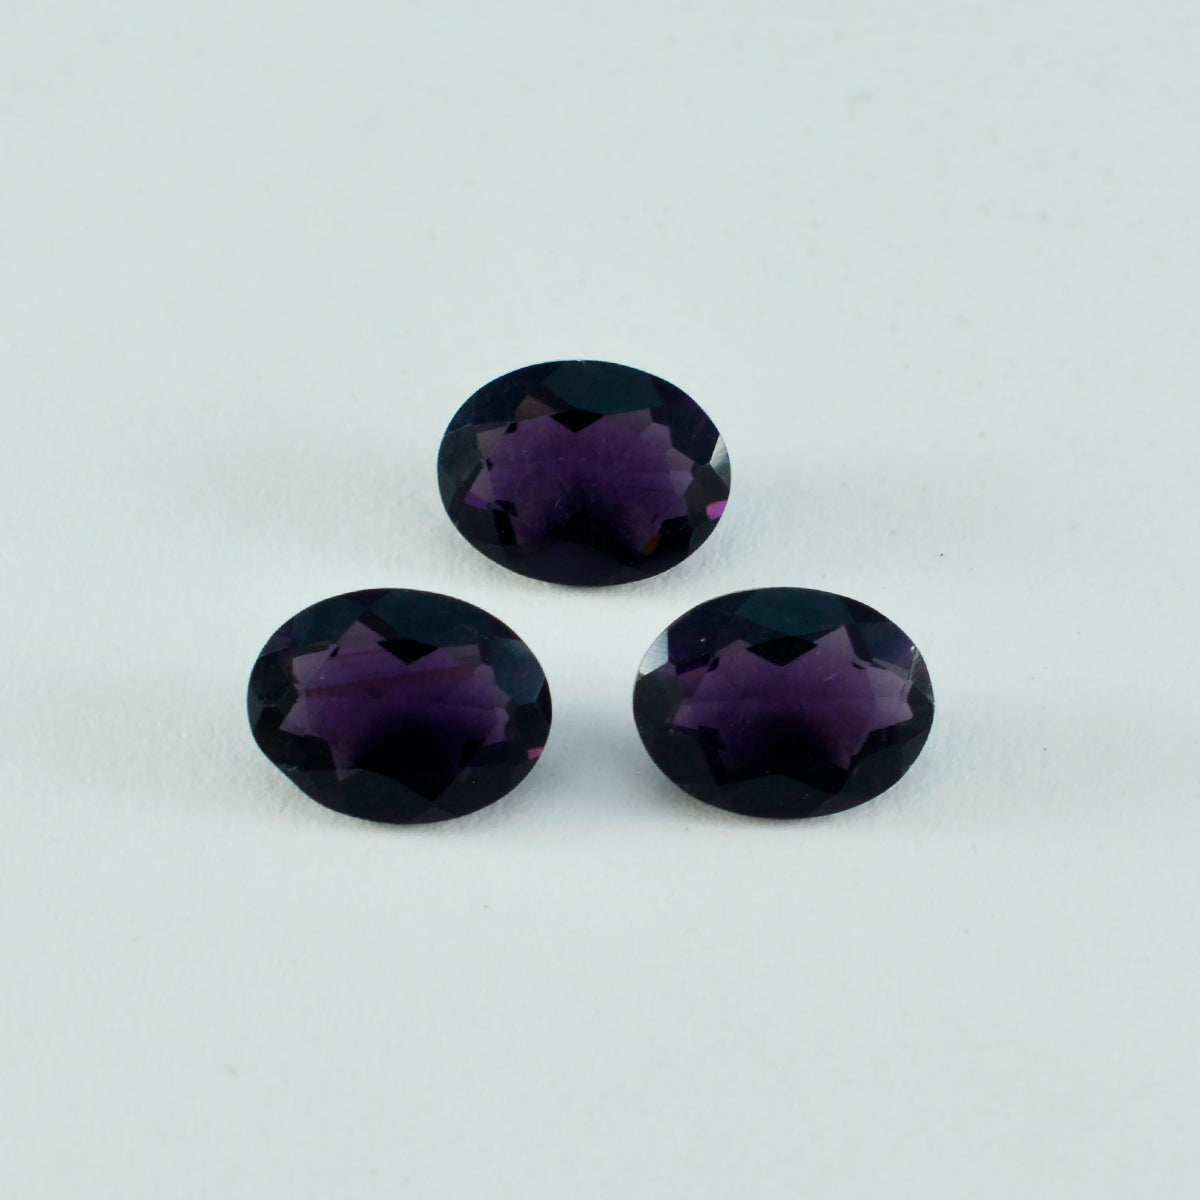 riyogems 1 шт. фиолетовый аметист cz граненый 10x14 мм овальной формы отличный качественный свободный камень